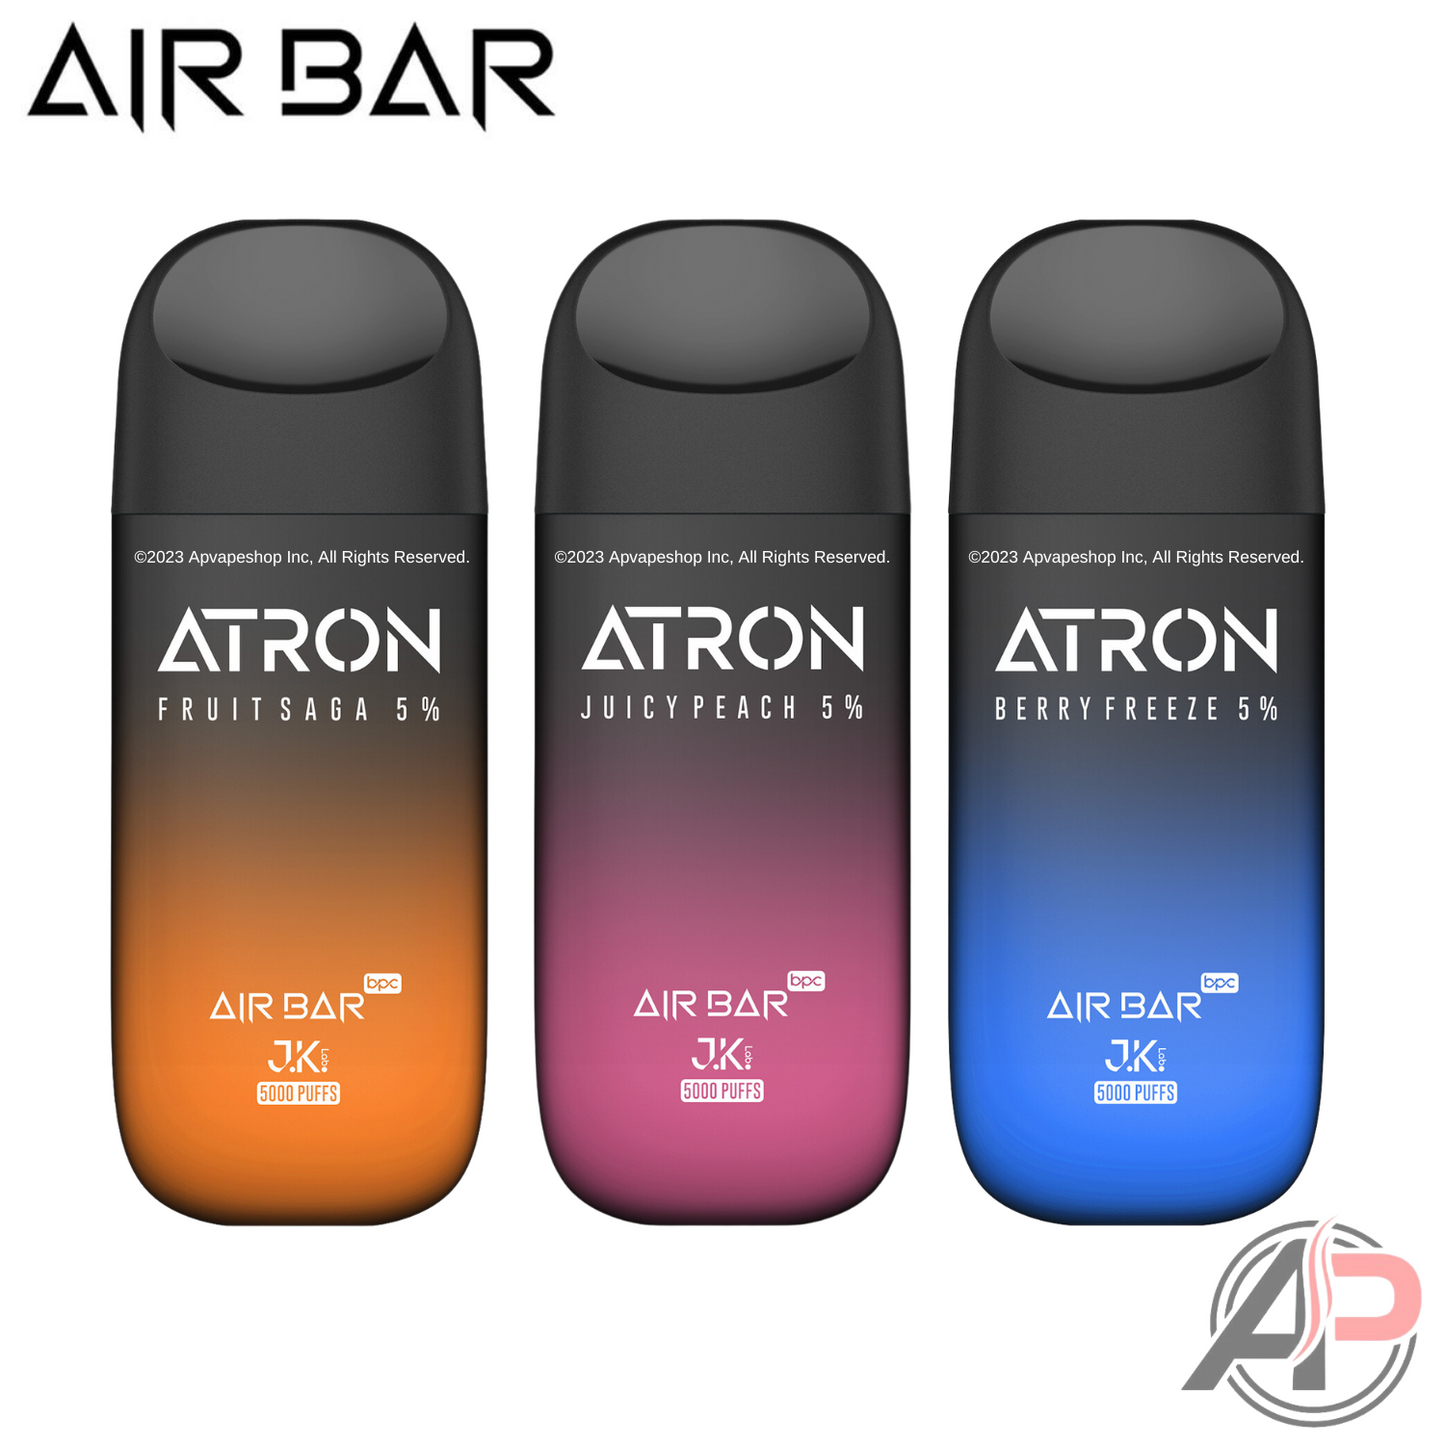 Air Bar Atron 5000 Puffs Disposable Vape Device